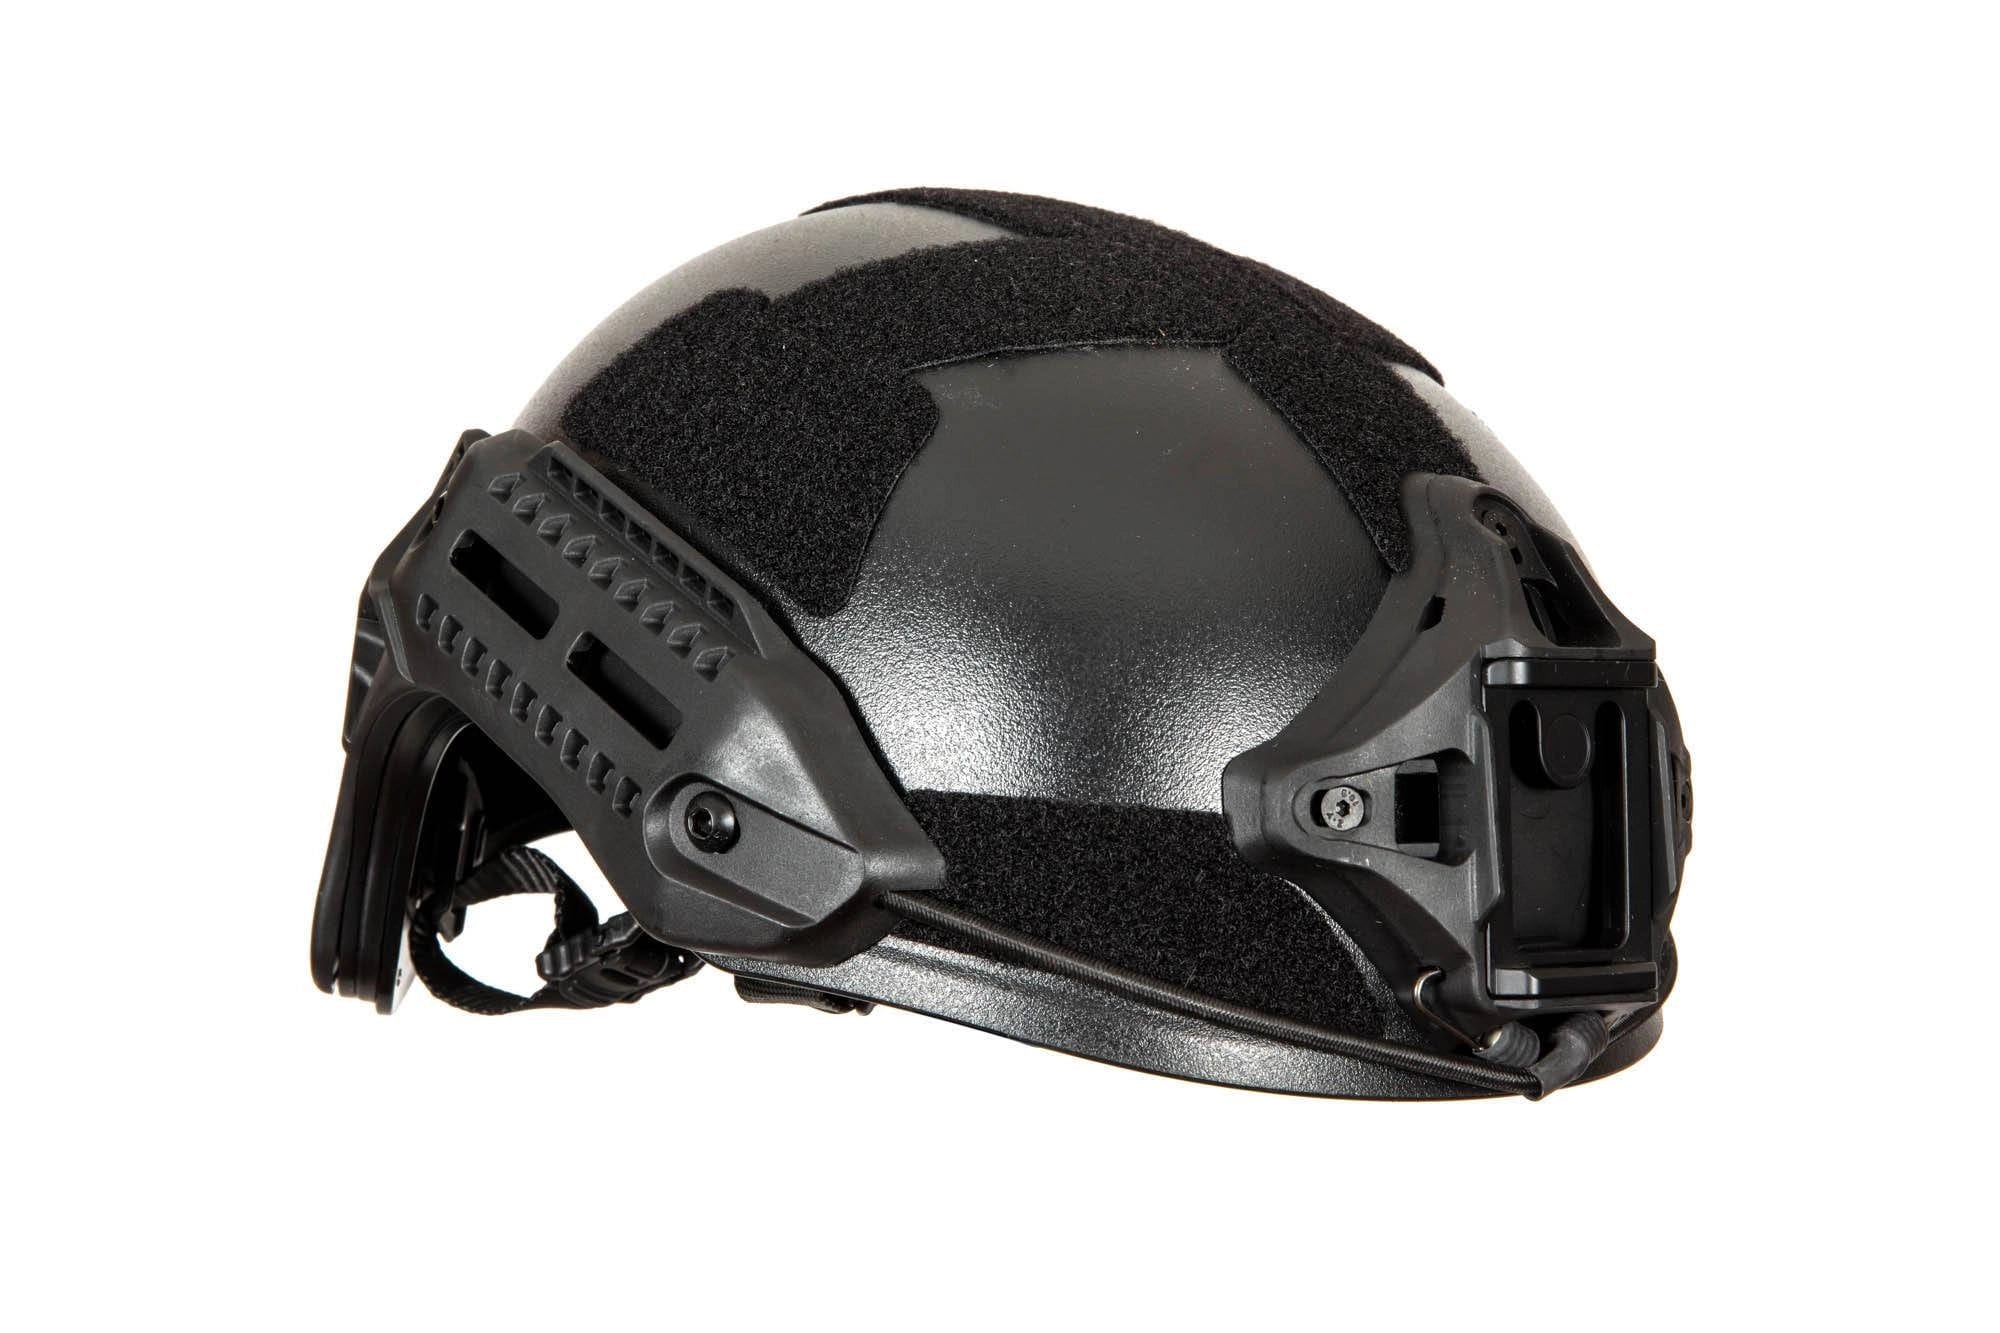 MK helmet replica - black